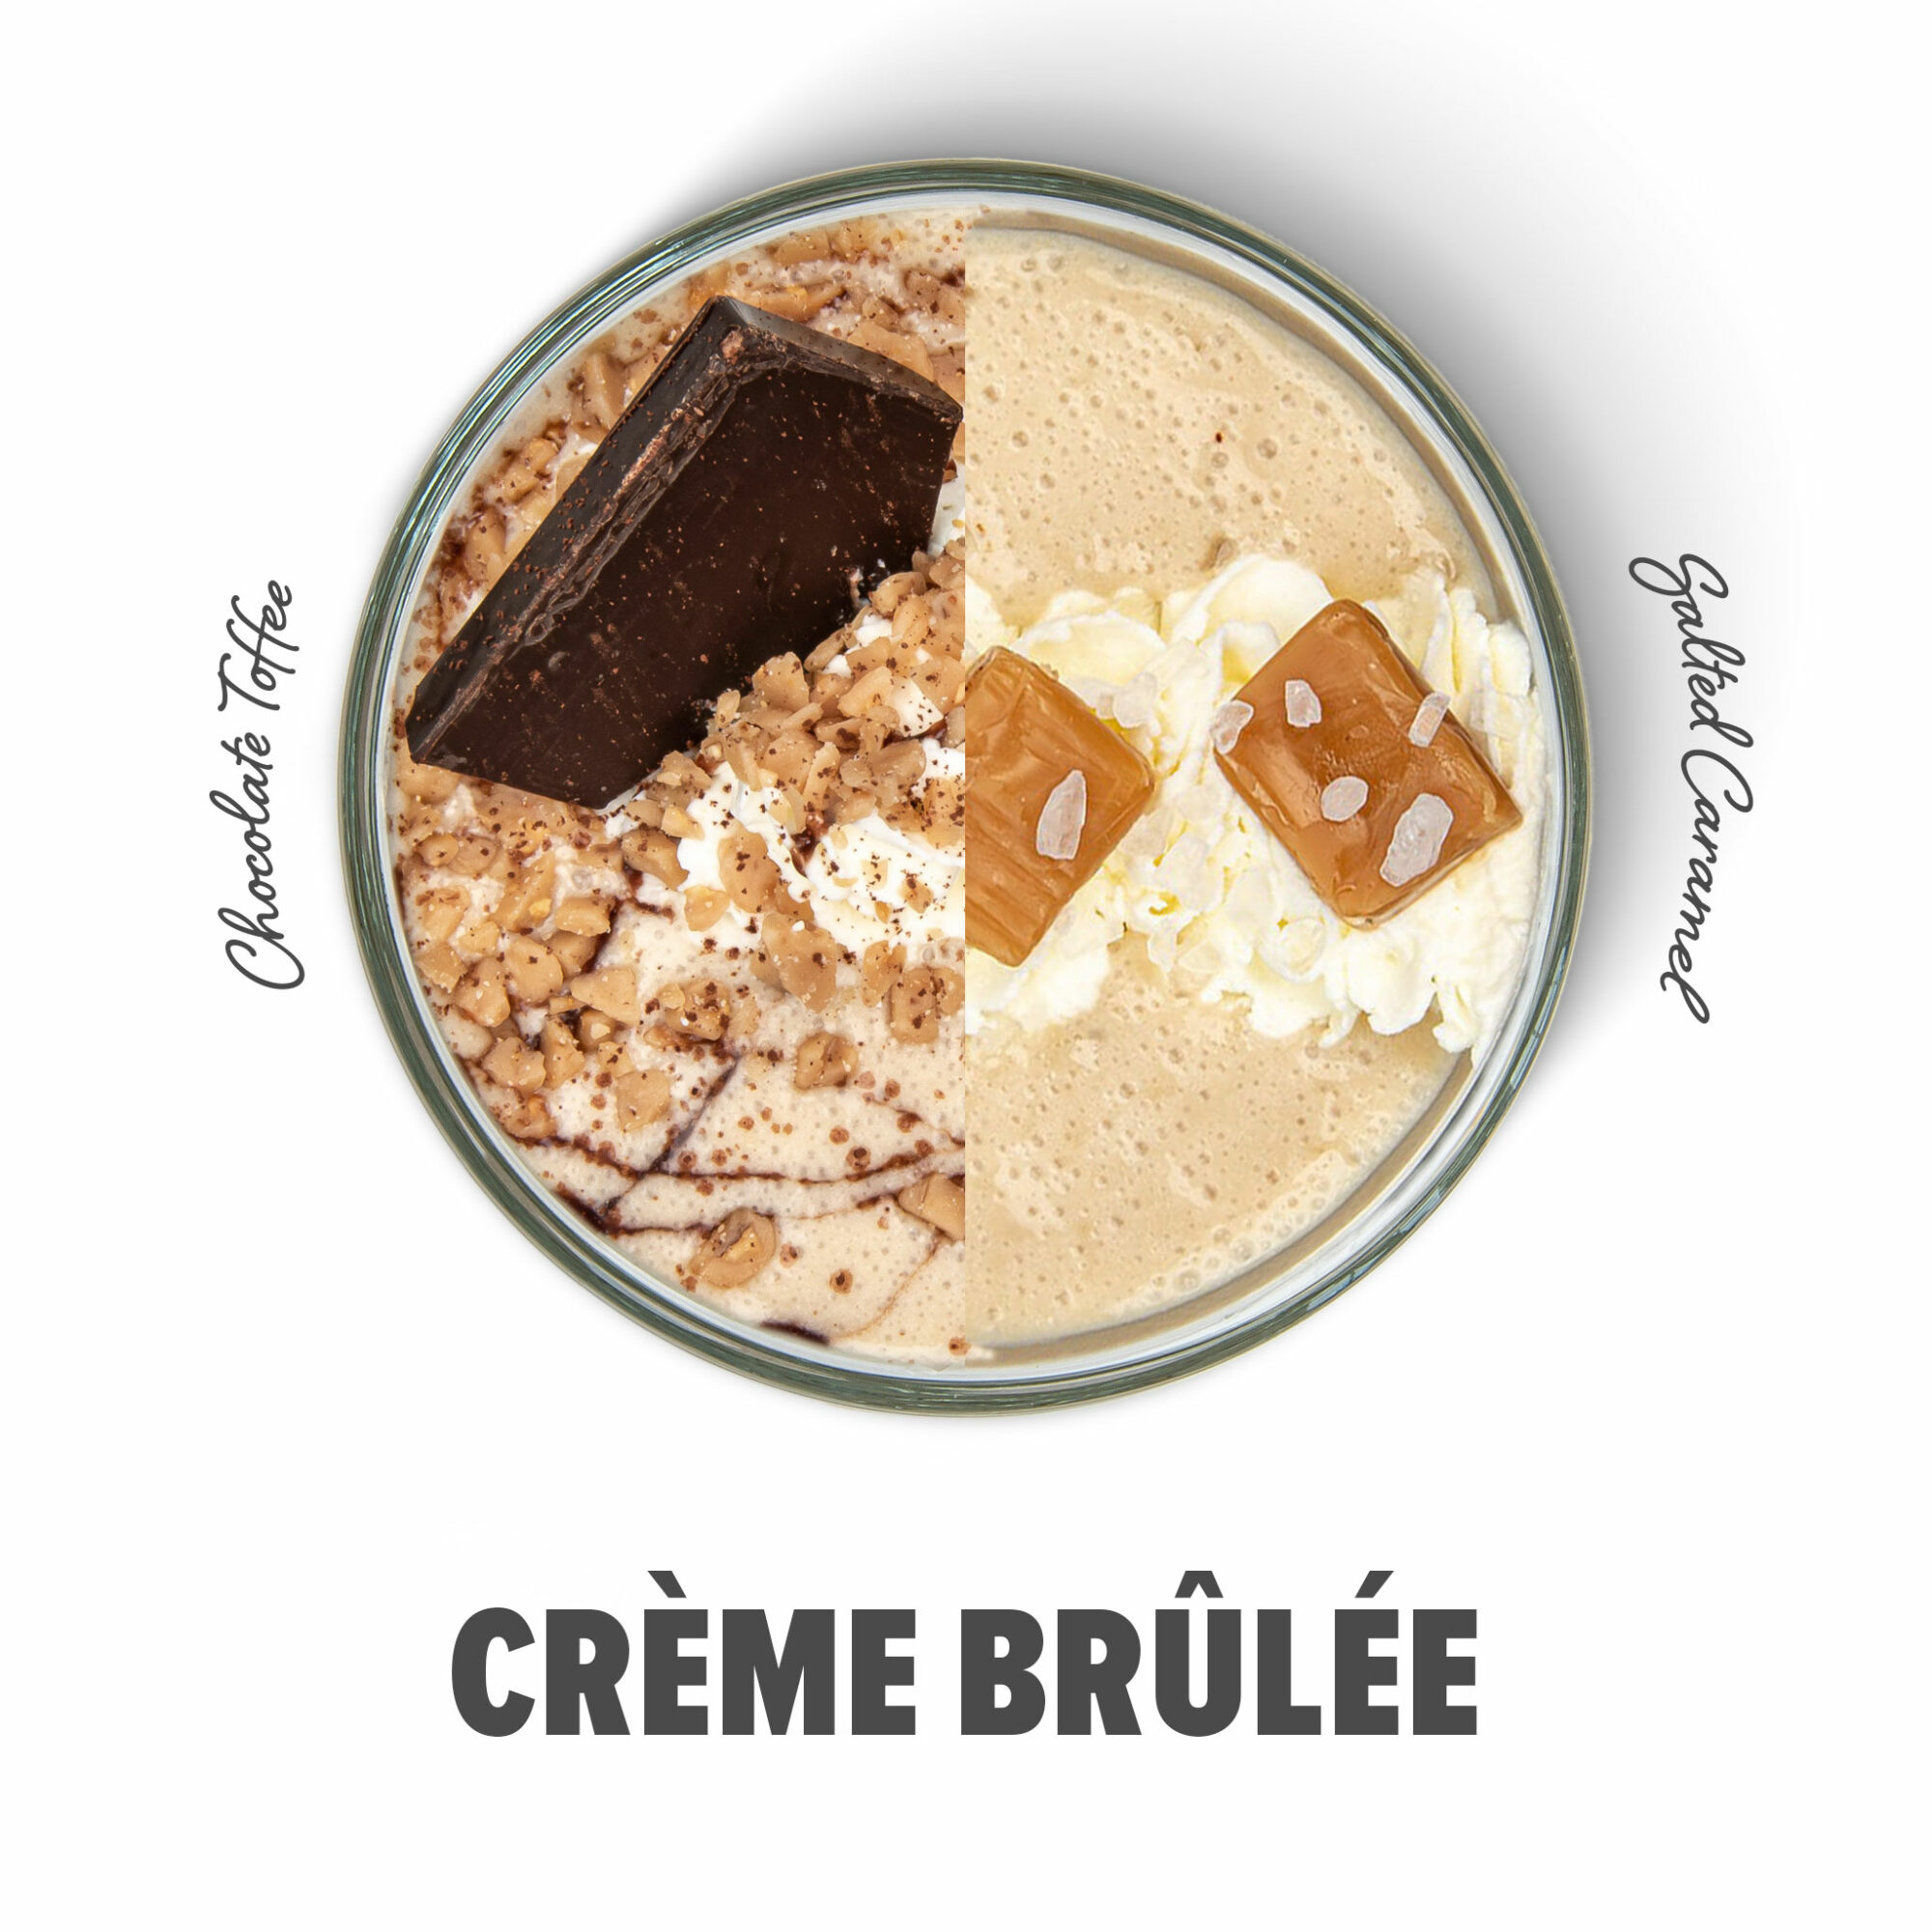 Creme Brulee shake image